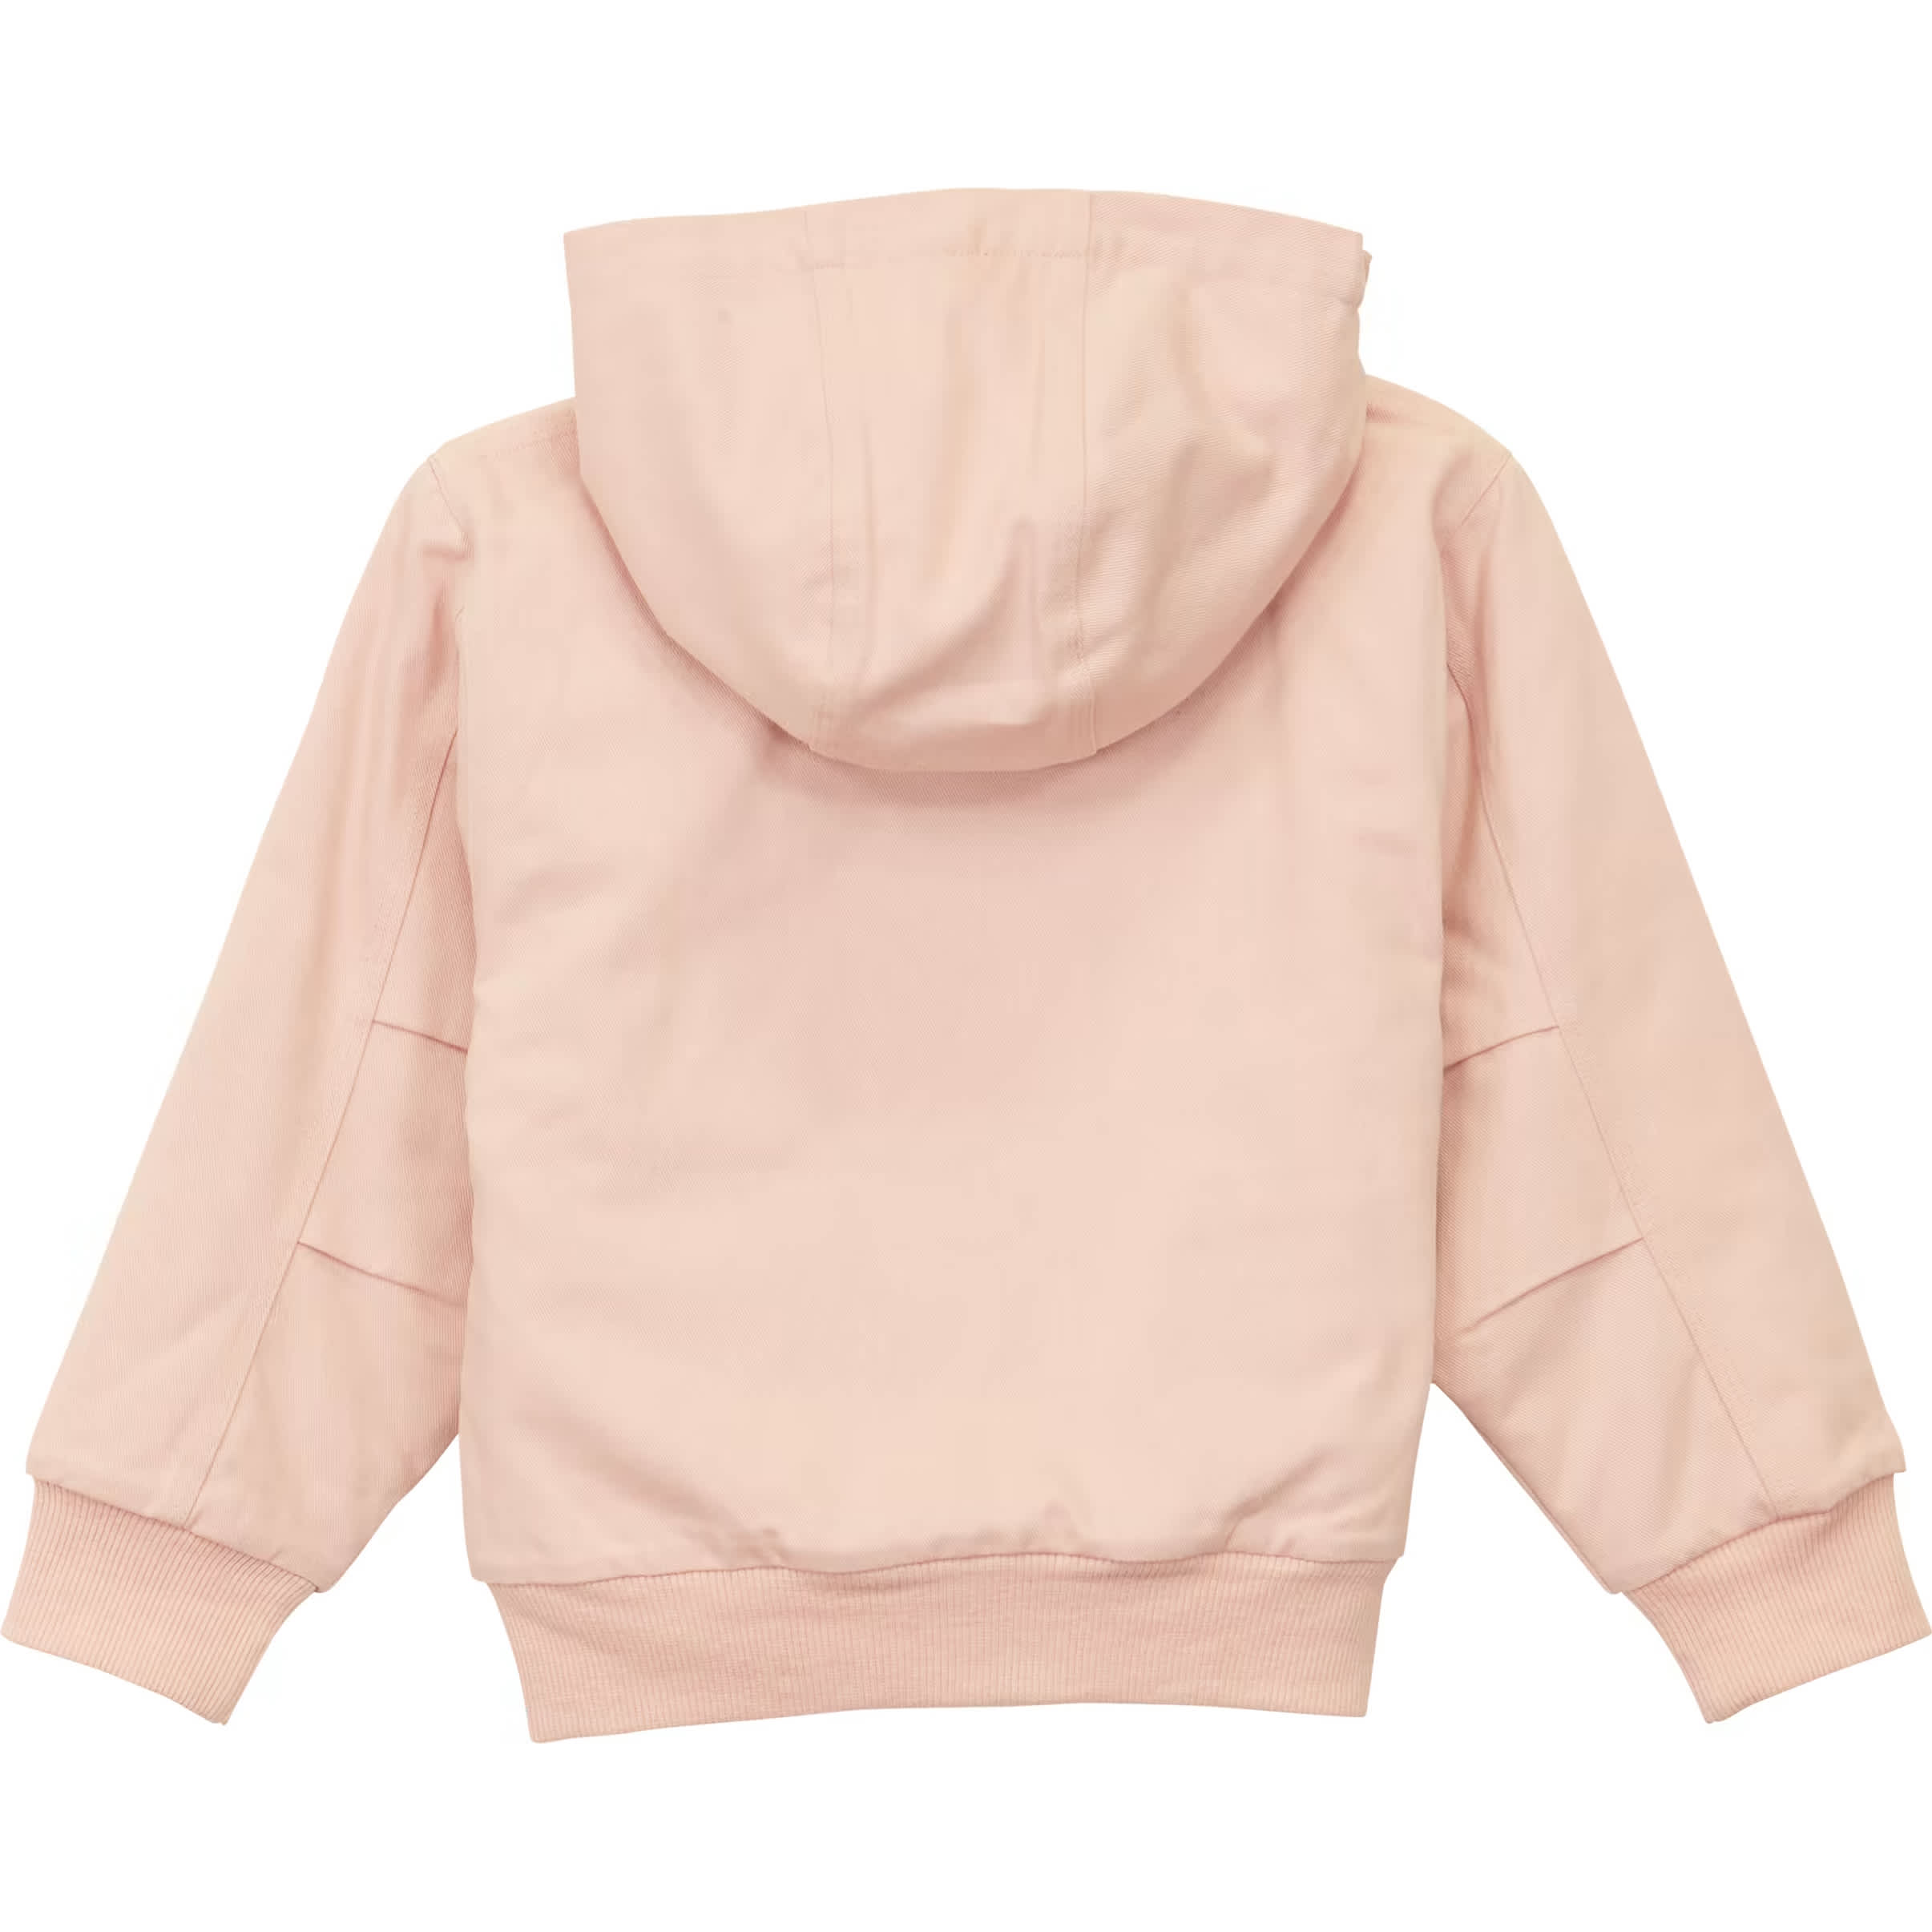 Bass Pro Shops® Infant/Toddler Girls’ Full-Zip Hooded Jacket